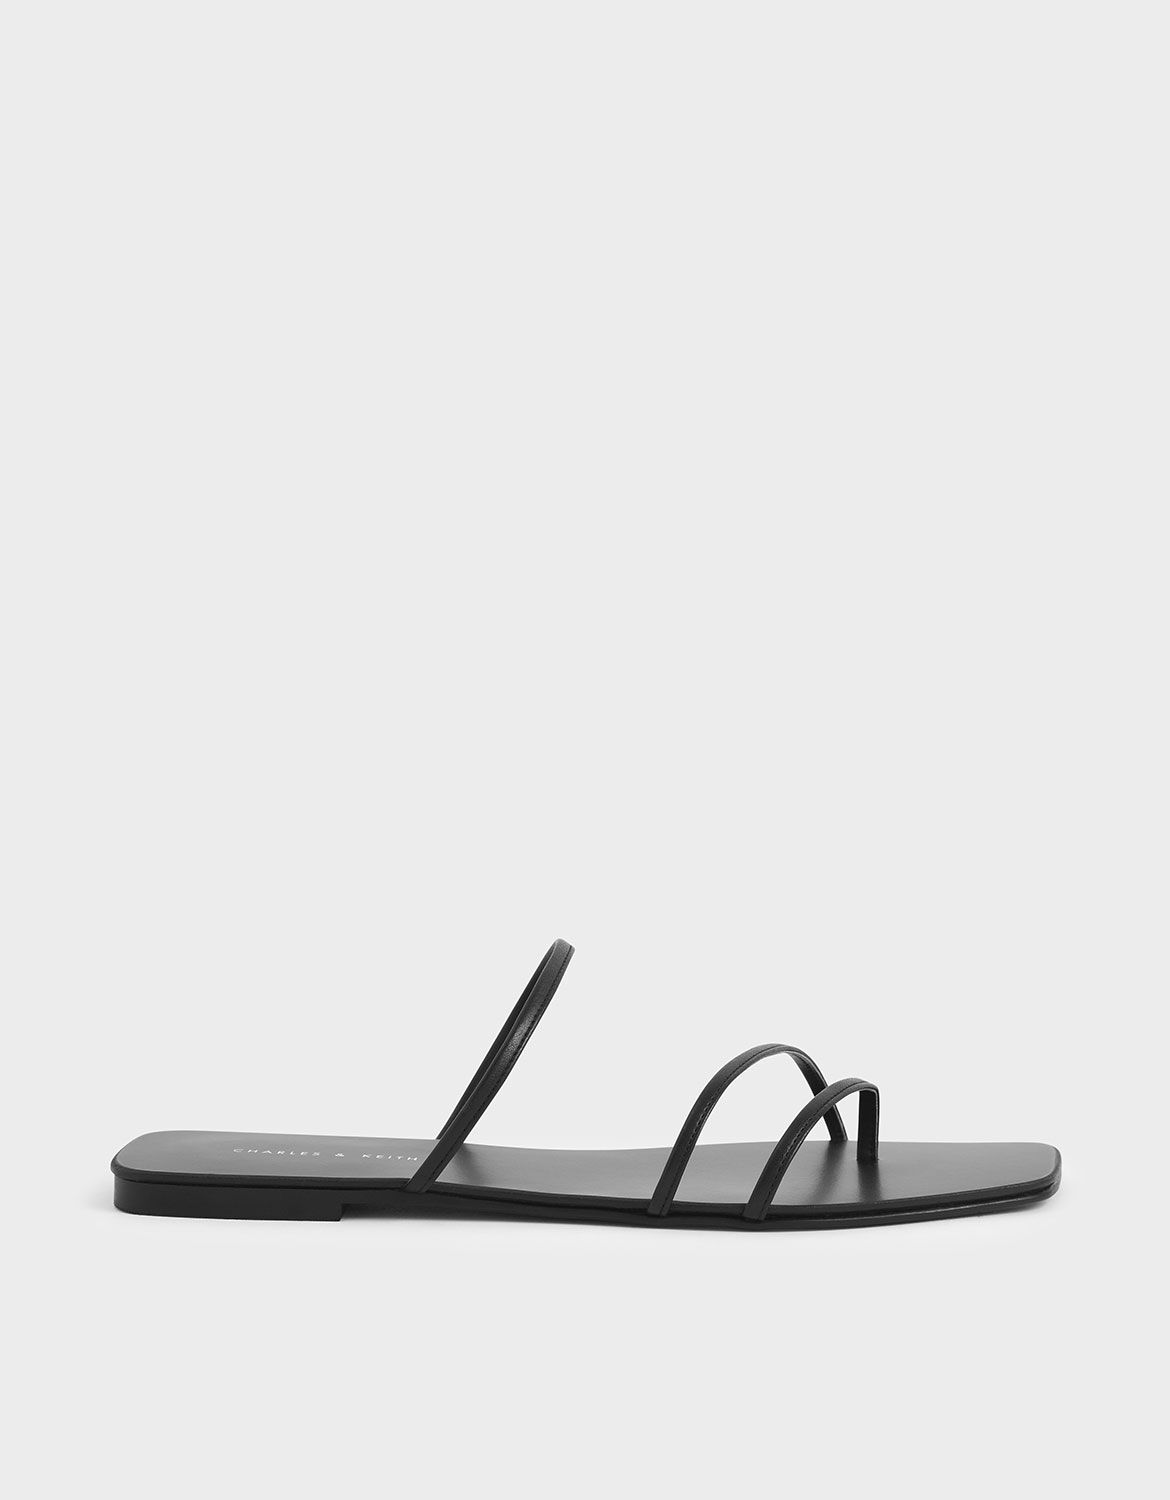 strappy flip flop sandals